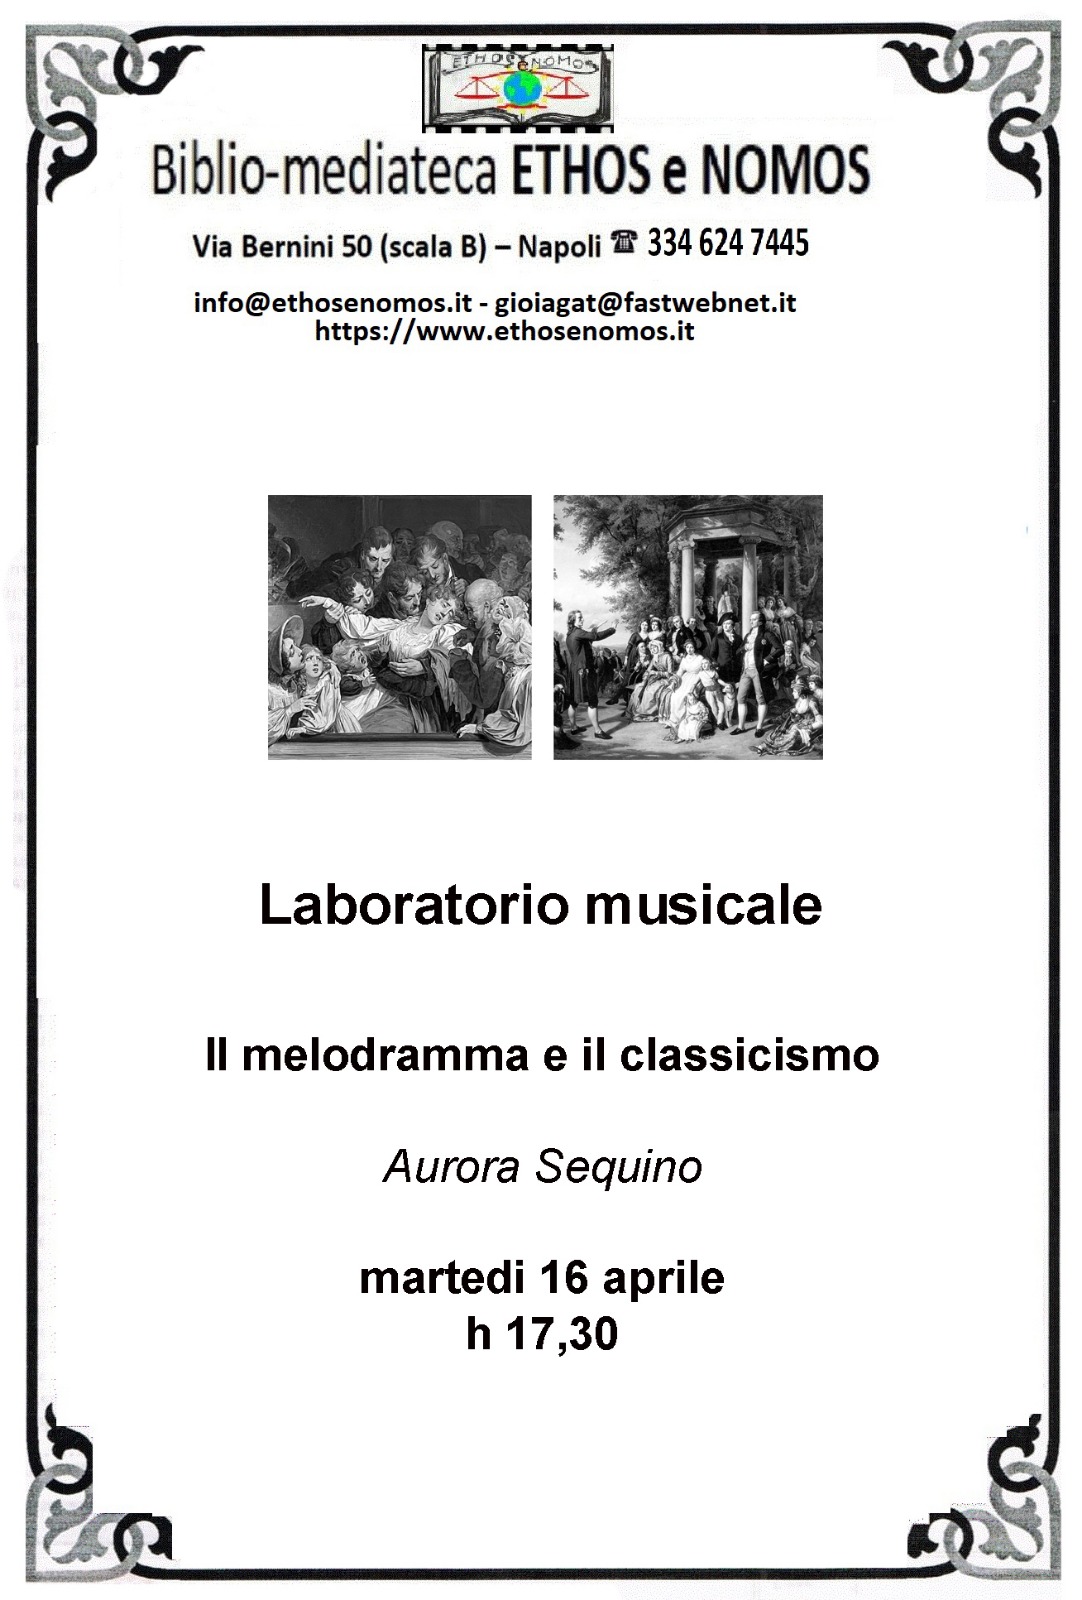 Aurora Sequino - Laboratorio musicale: il melodramma e il classicismo